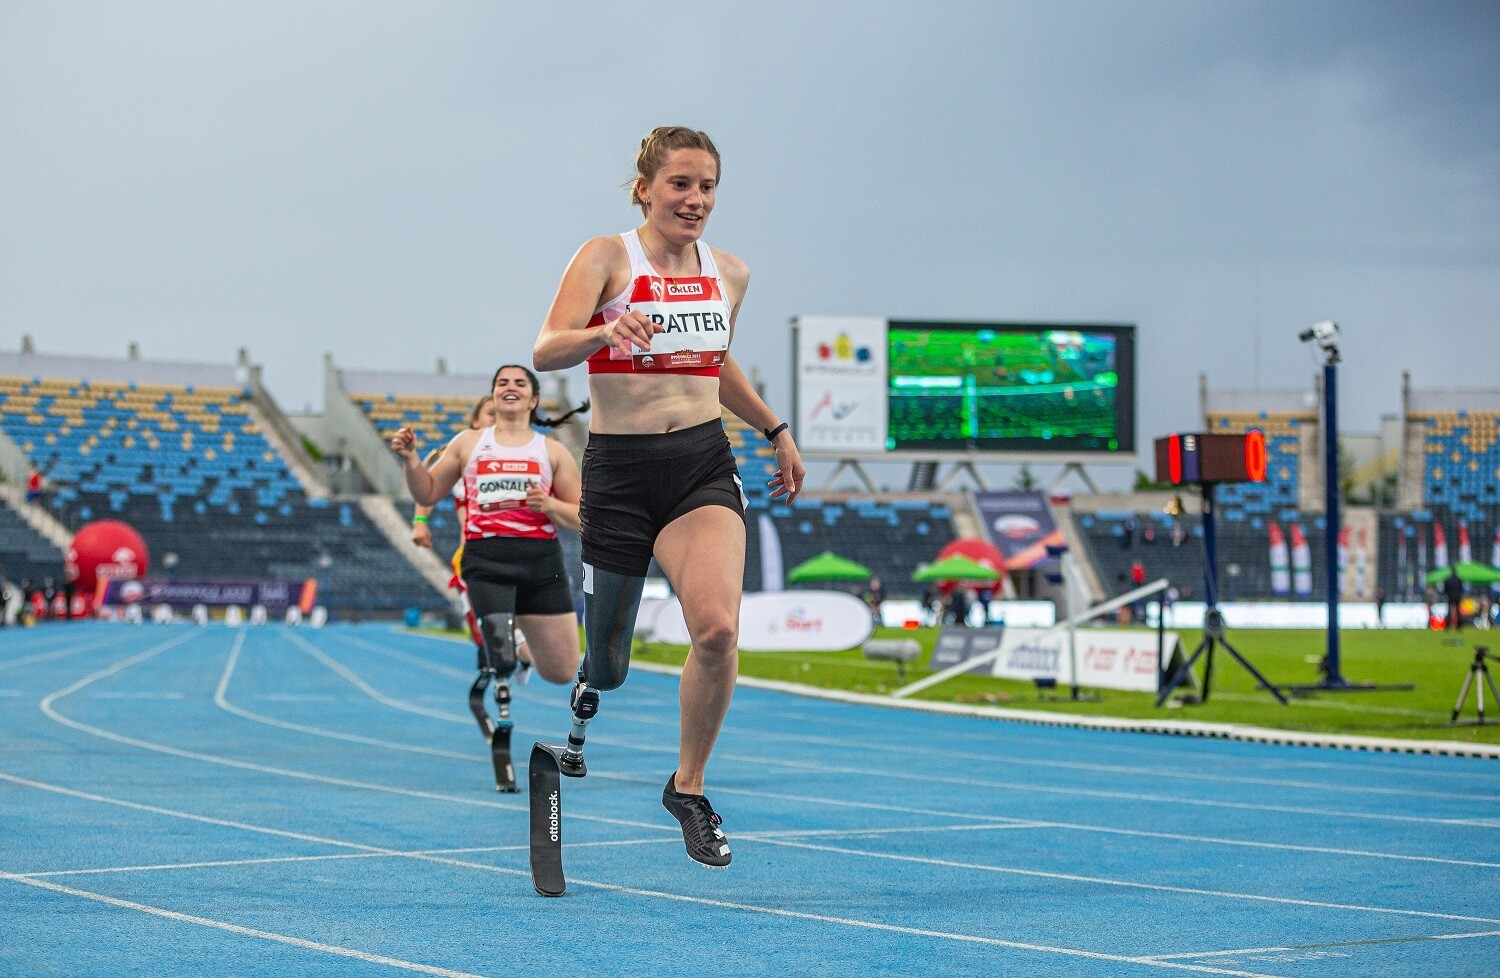 La giovane atleta Elena Kratter corre su una pista da corsa con una protesi alla gamba.